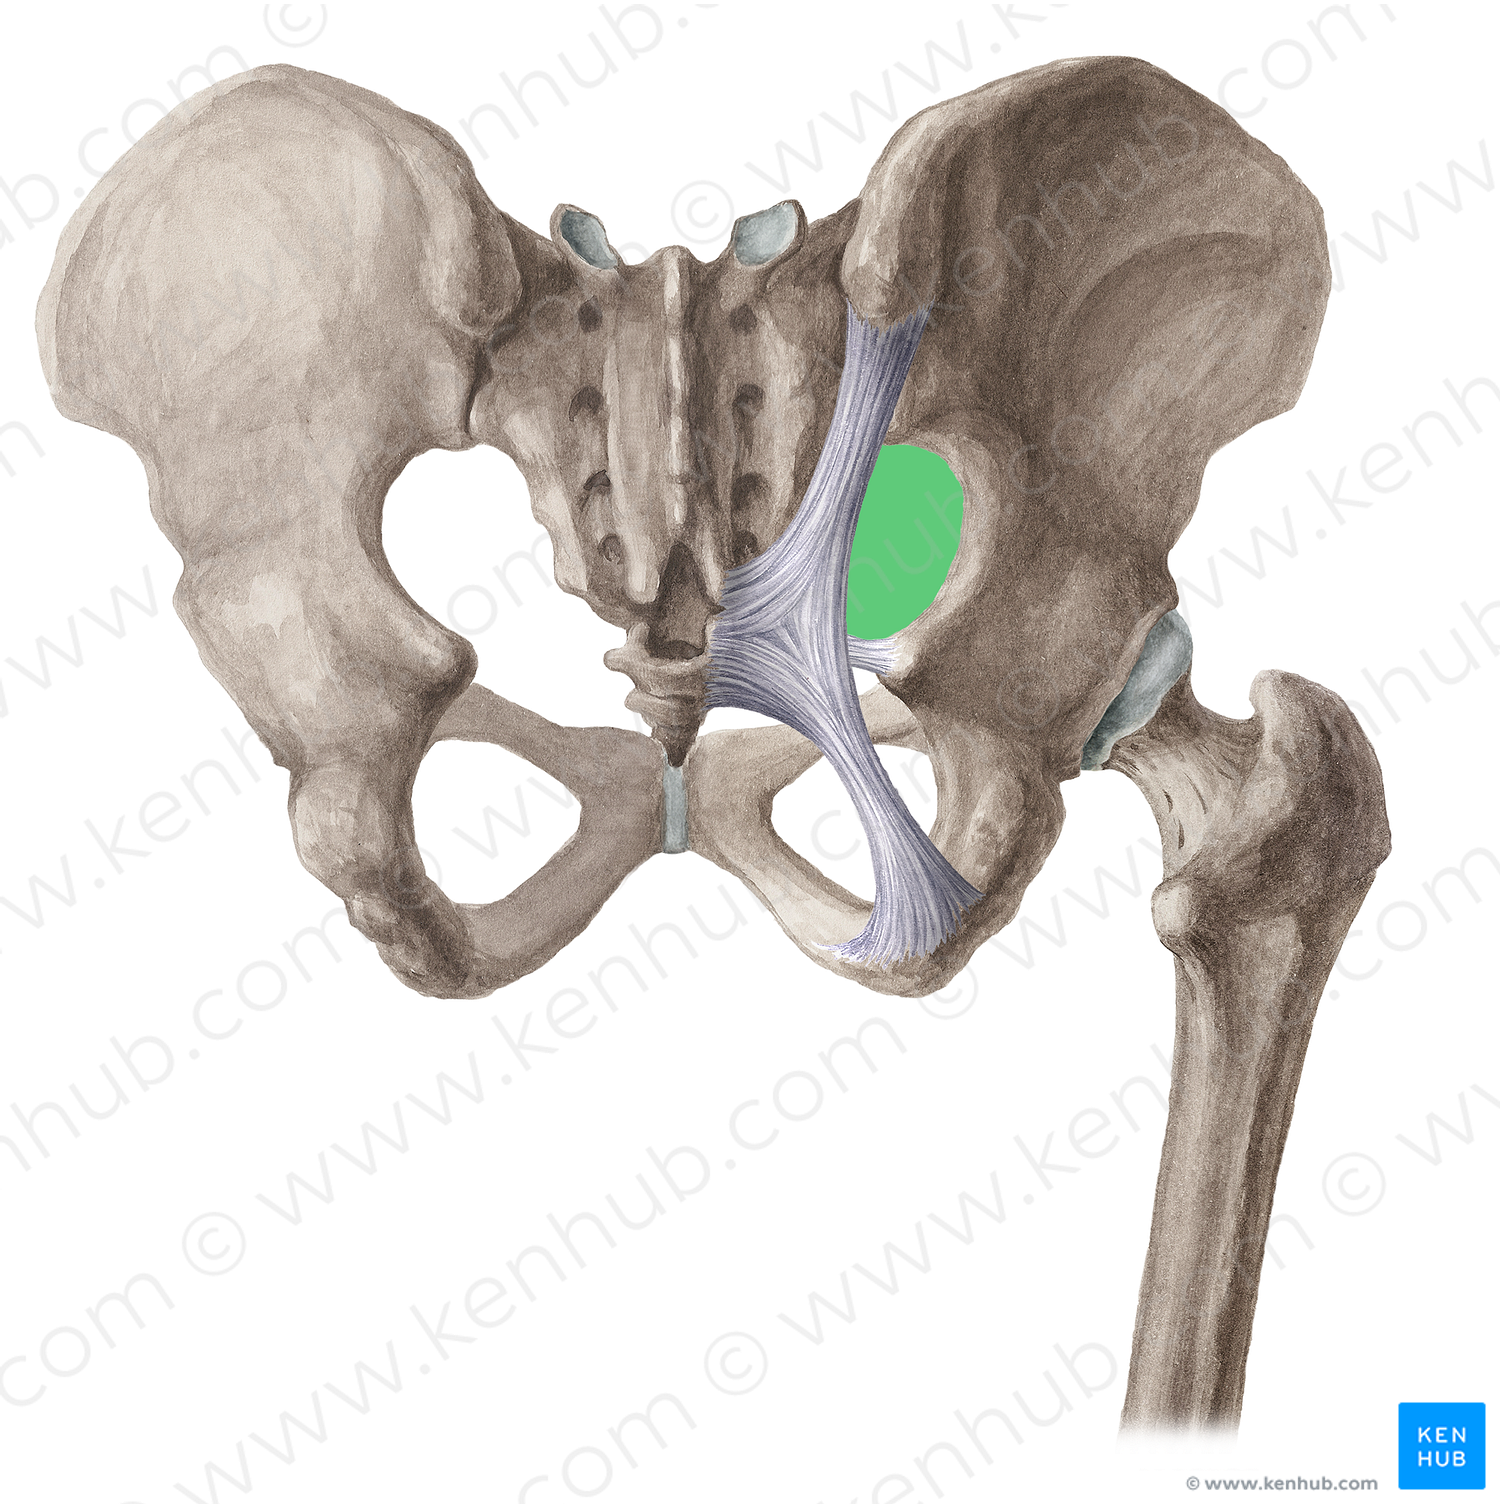 Greater sciatic foramen (#15380)